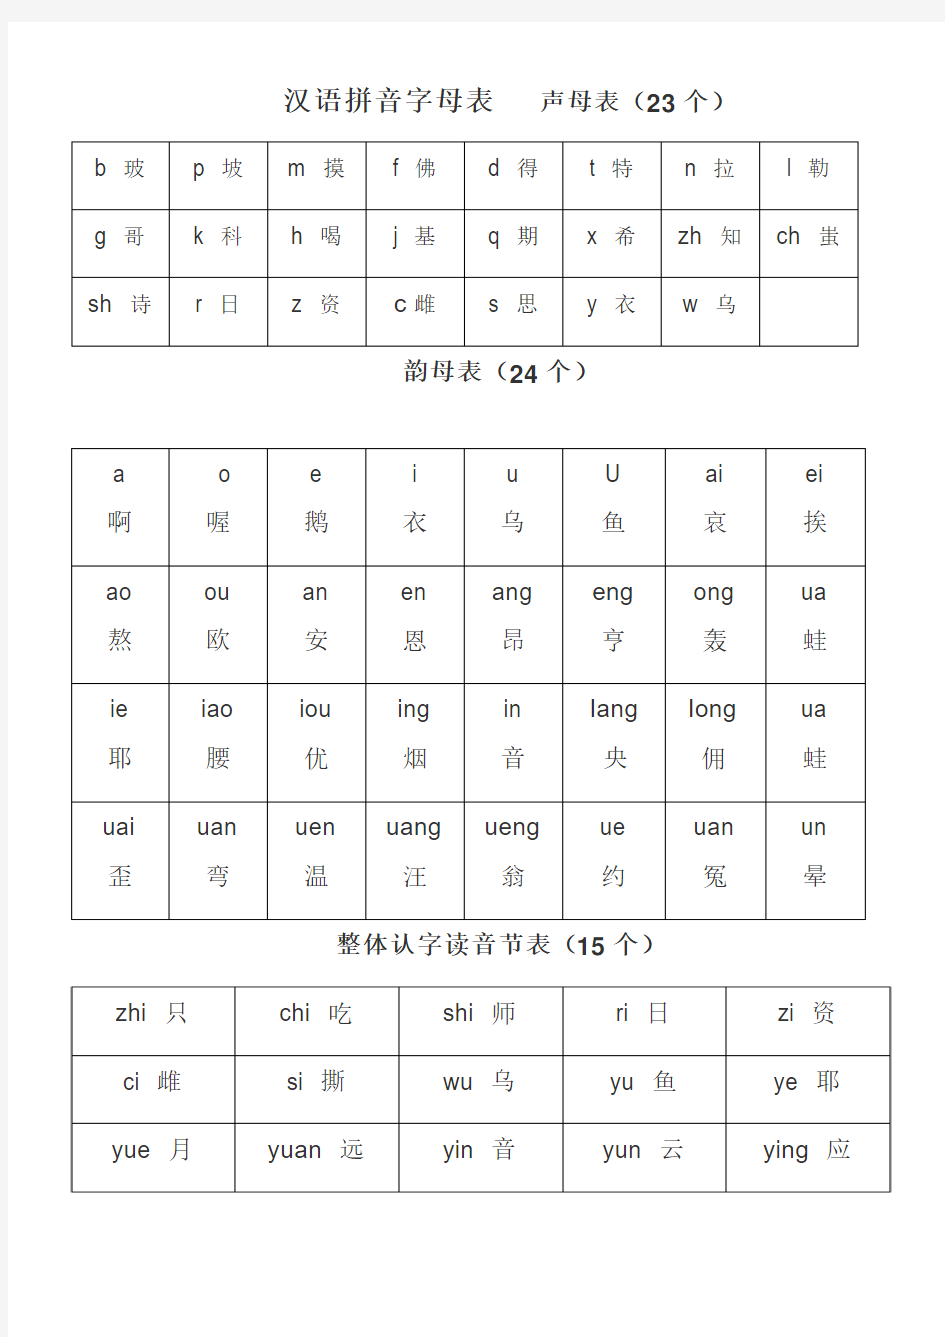 一年级汉语拼音字母表(整洁版)